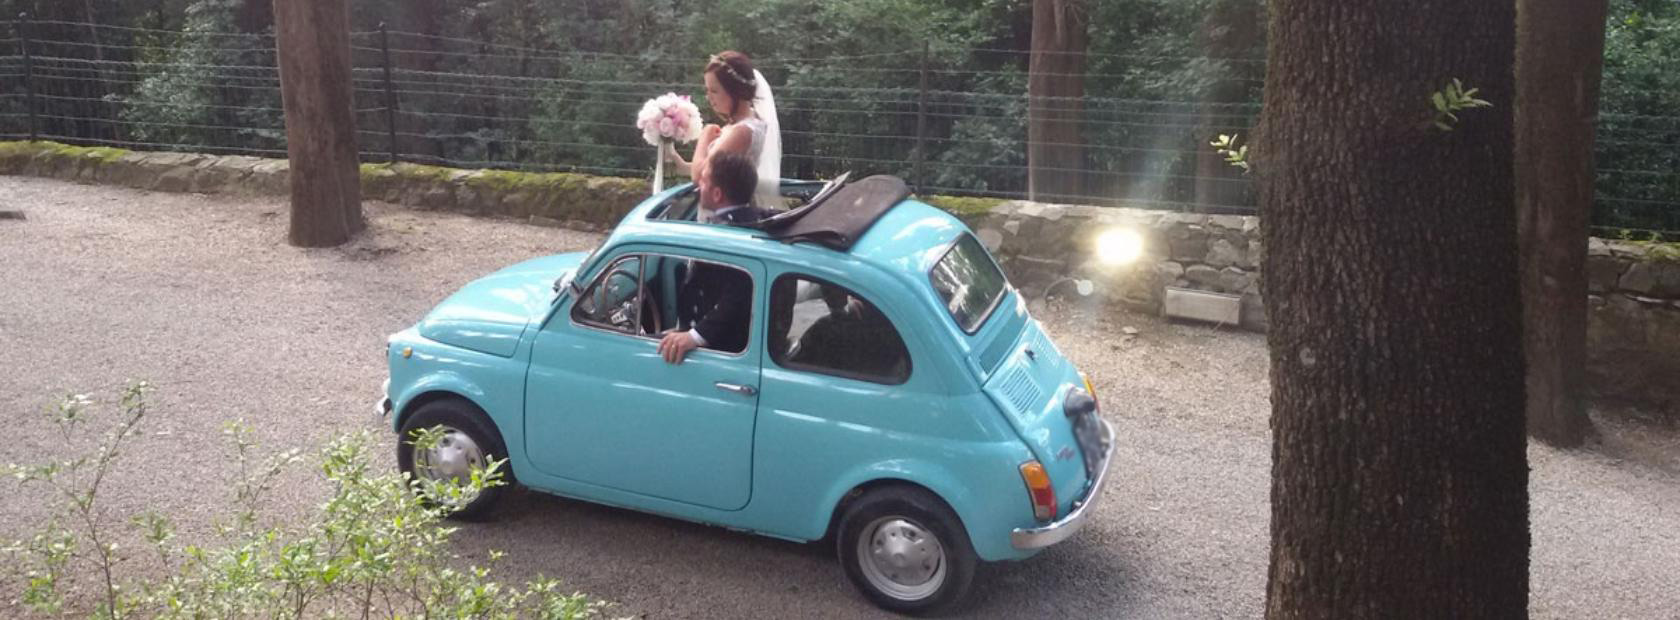 Noleggio Fiat 500 anni 70 per tour e matrimoni a Cortona